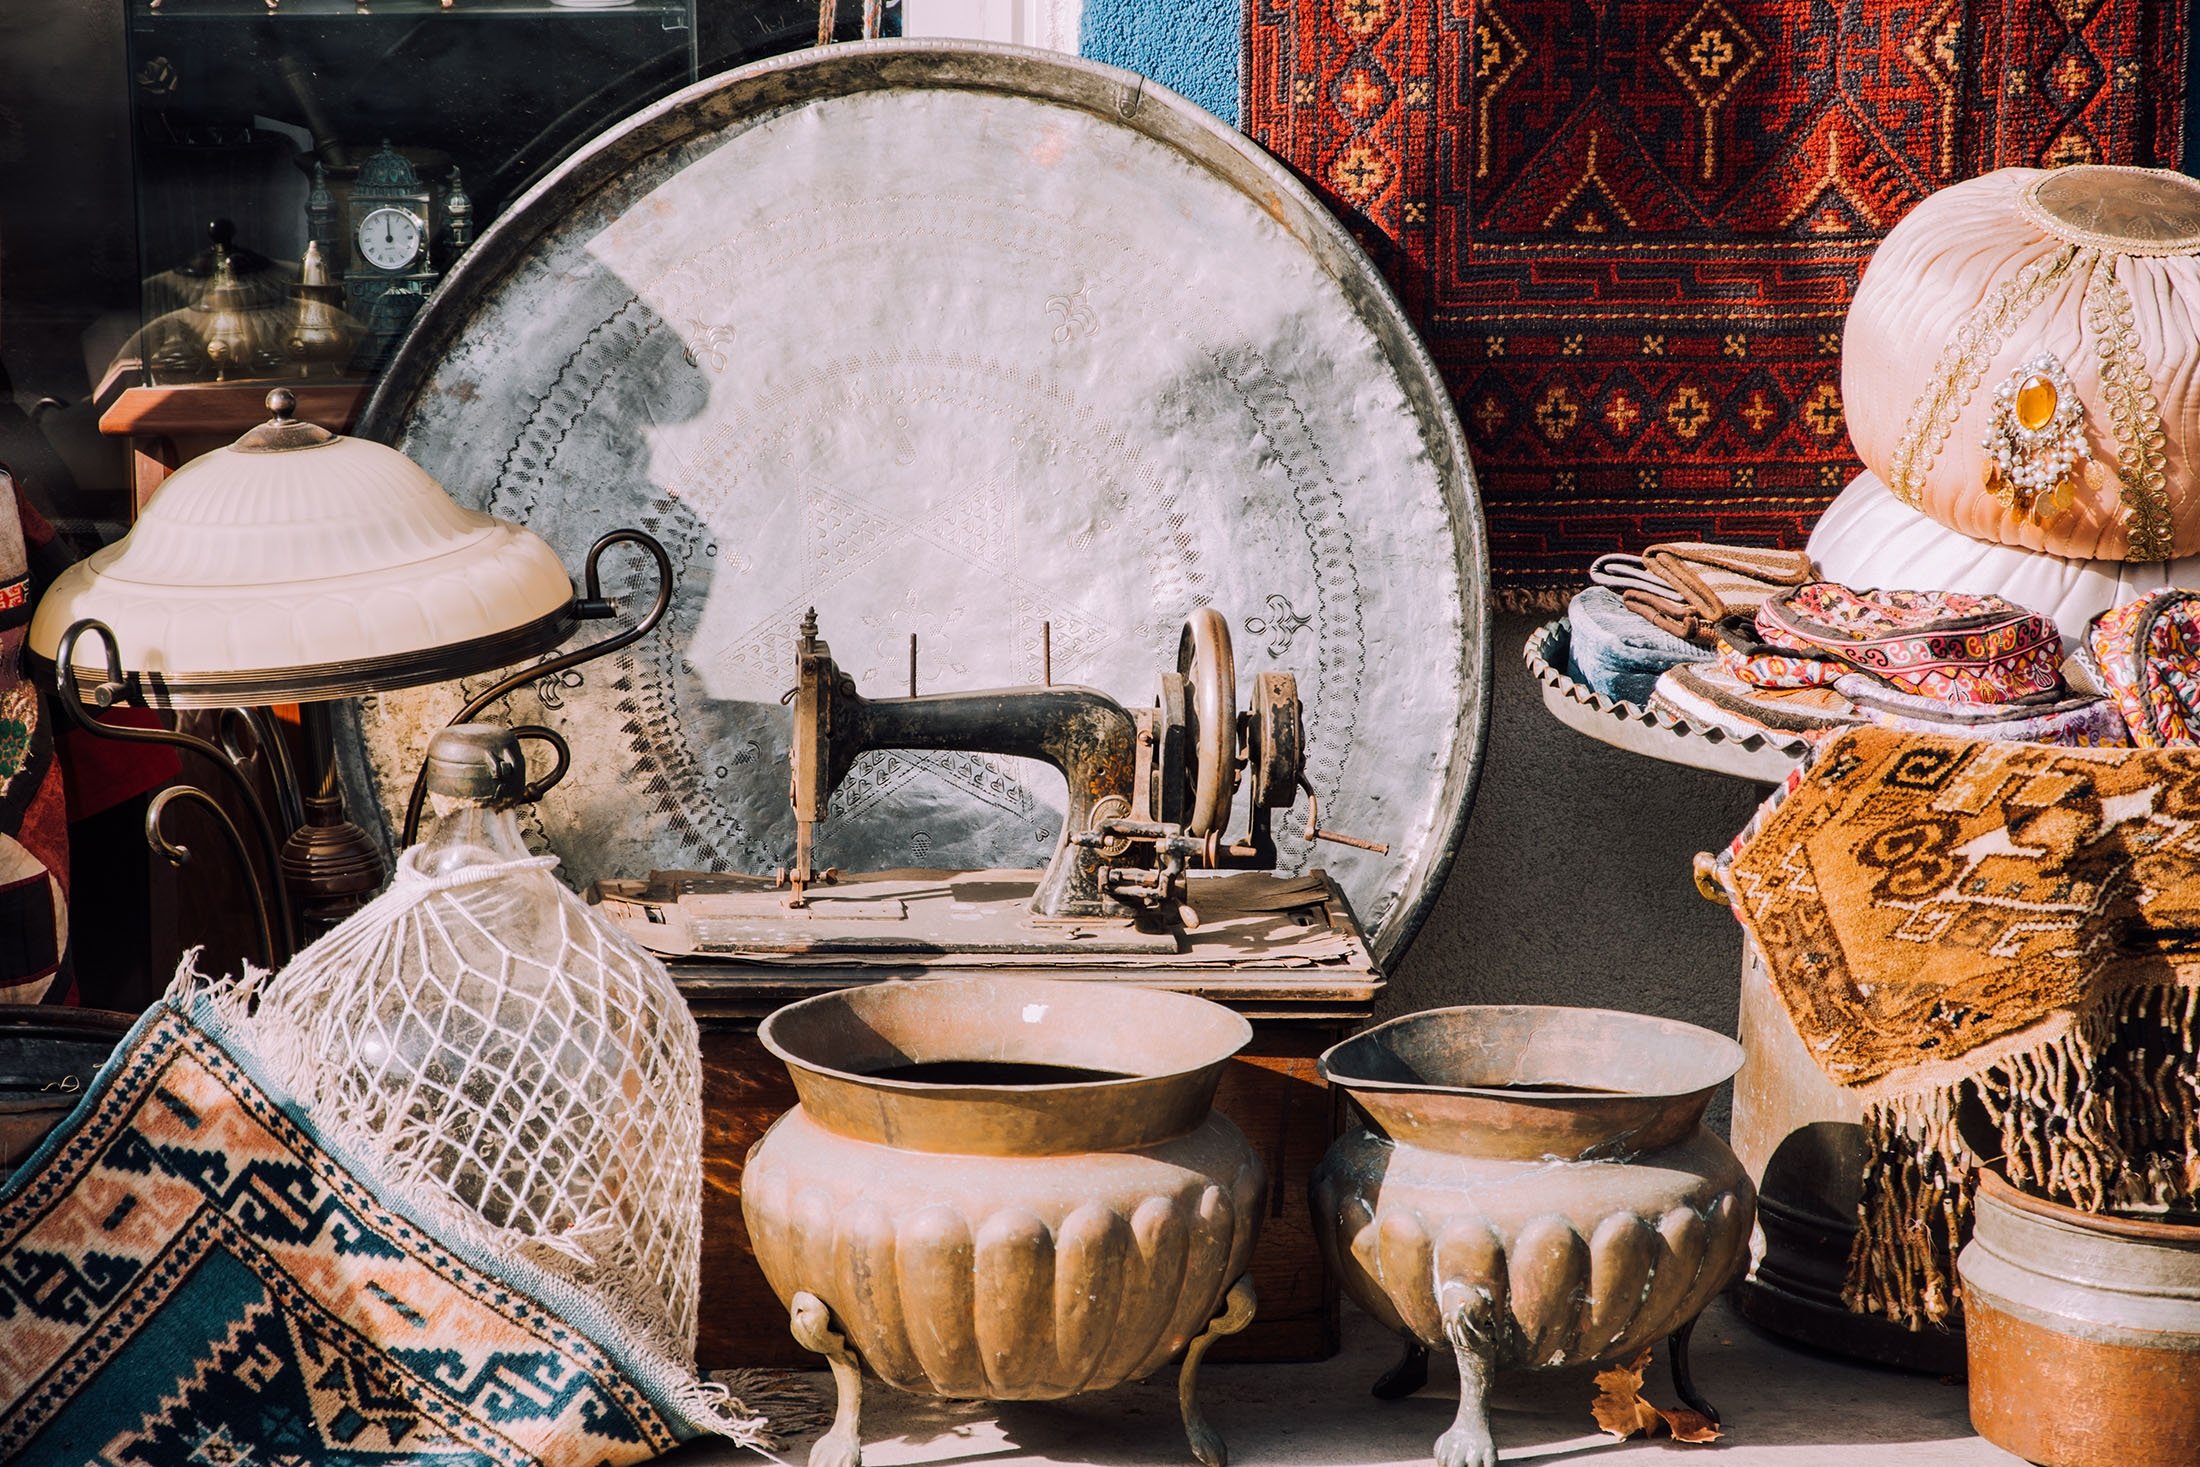 The Bodrum Antique Market. (Shutterstock Photo)